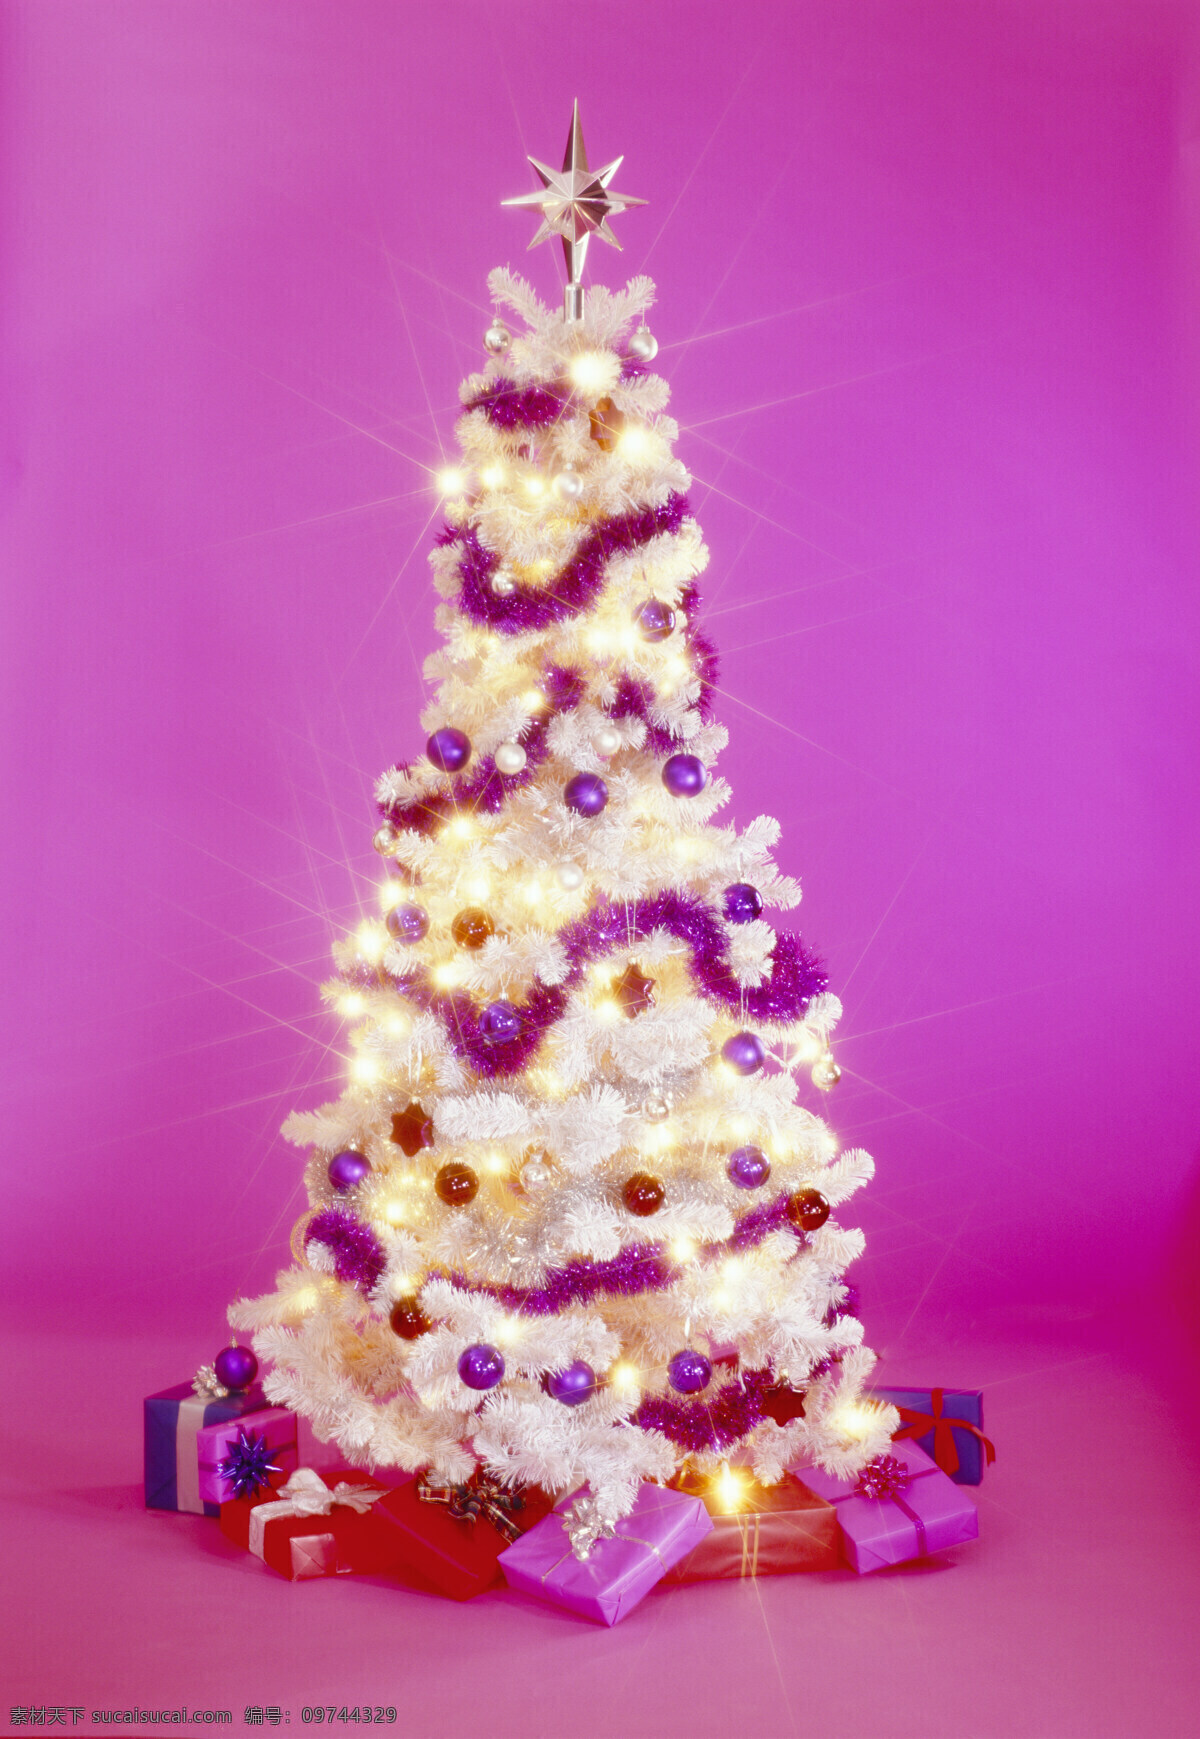 节日庆祝 礼物盒 圣诞 圣诞灯 圣诞节 圣诞球 圣诞树 圣诞节情境 文化艺术 圣诞装饰 装饰 圣诞树装饰 家居装饰素材 灯饰素材